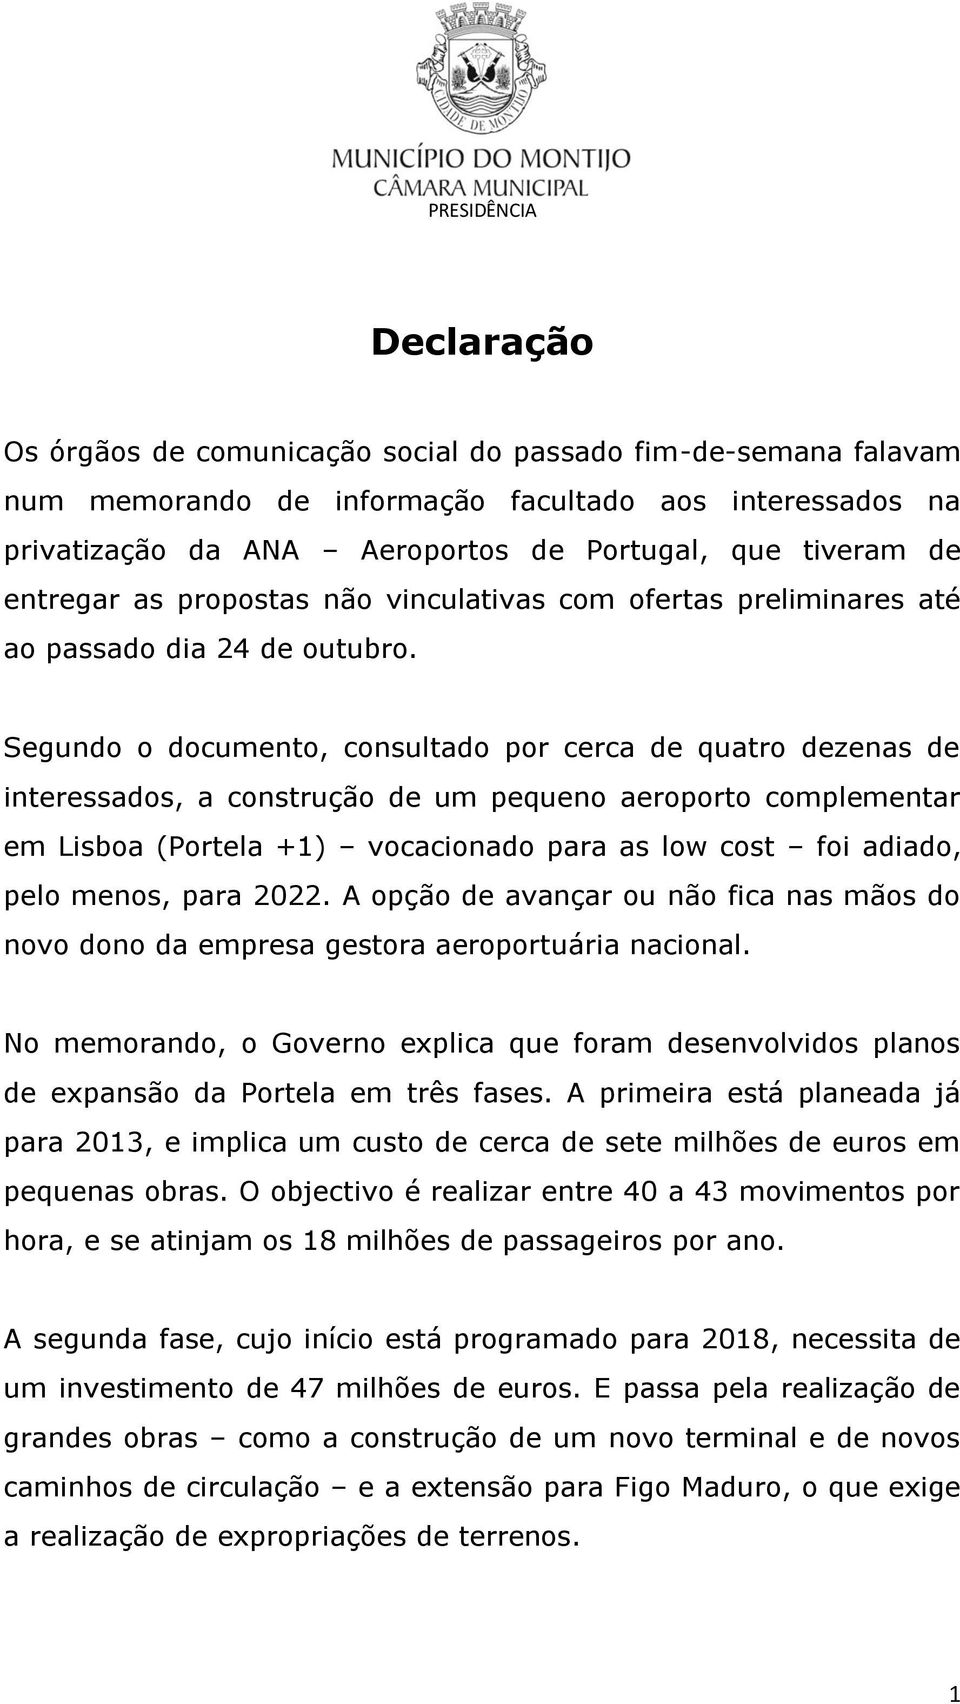 Segundo o documento, consultado por cerca de quatro dezenas de interessados, a construção de um pequeno aeroporto complementar em Lisboa (Portela +1) vocacionado para as low cost foi adiado, pelo